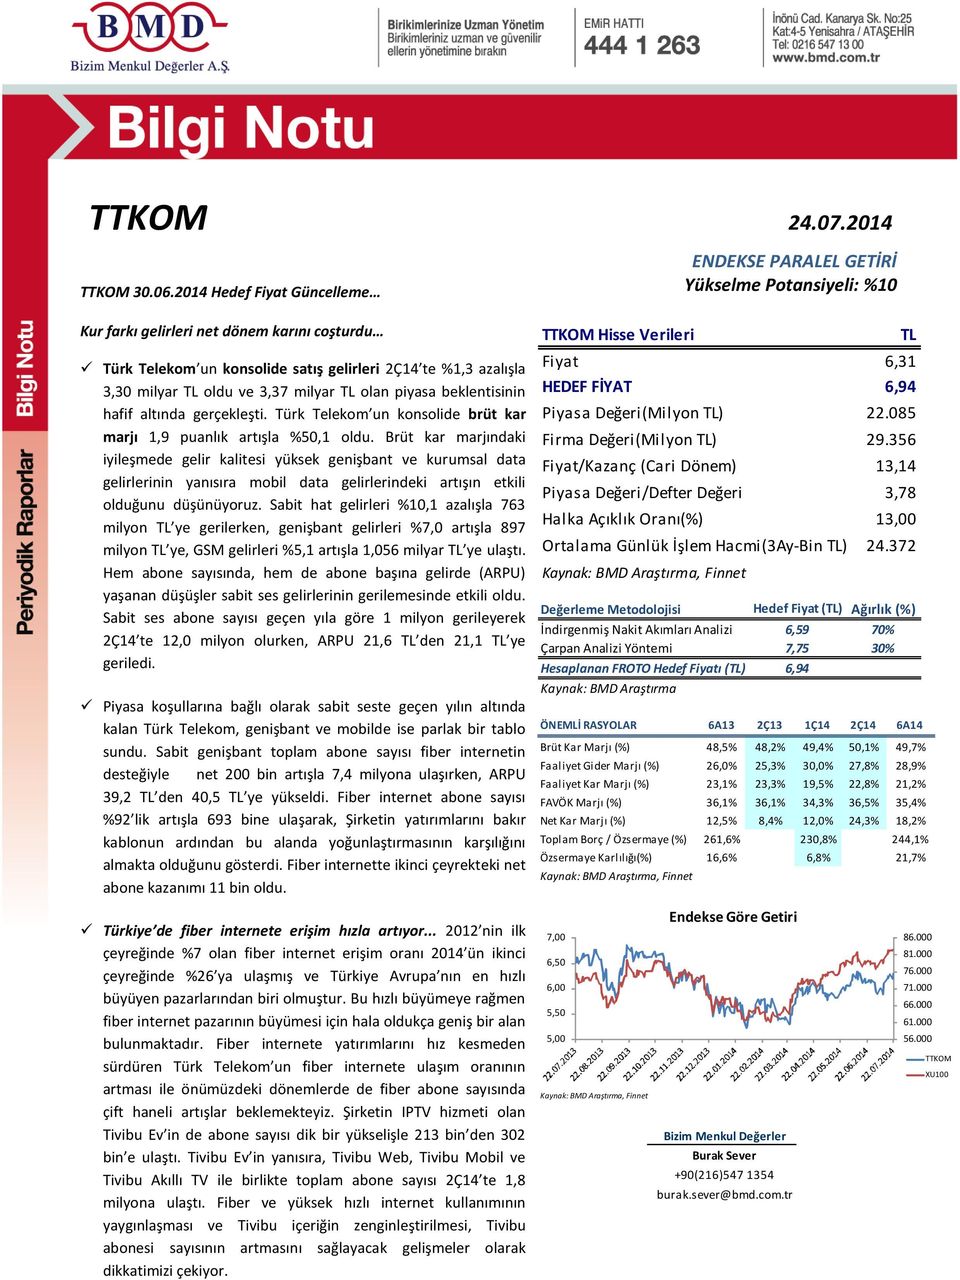 beklentisinin hafif altında gerçekleşti. Türk Telekom un konsolide brüt kar marjı 1,9 puanlık artışla %50,1 oldu.